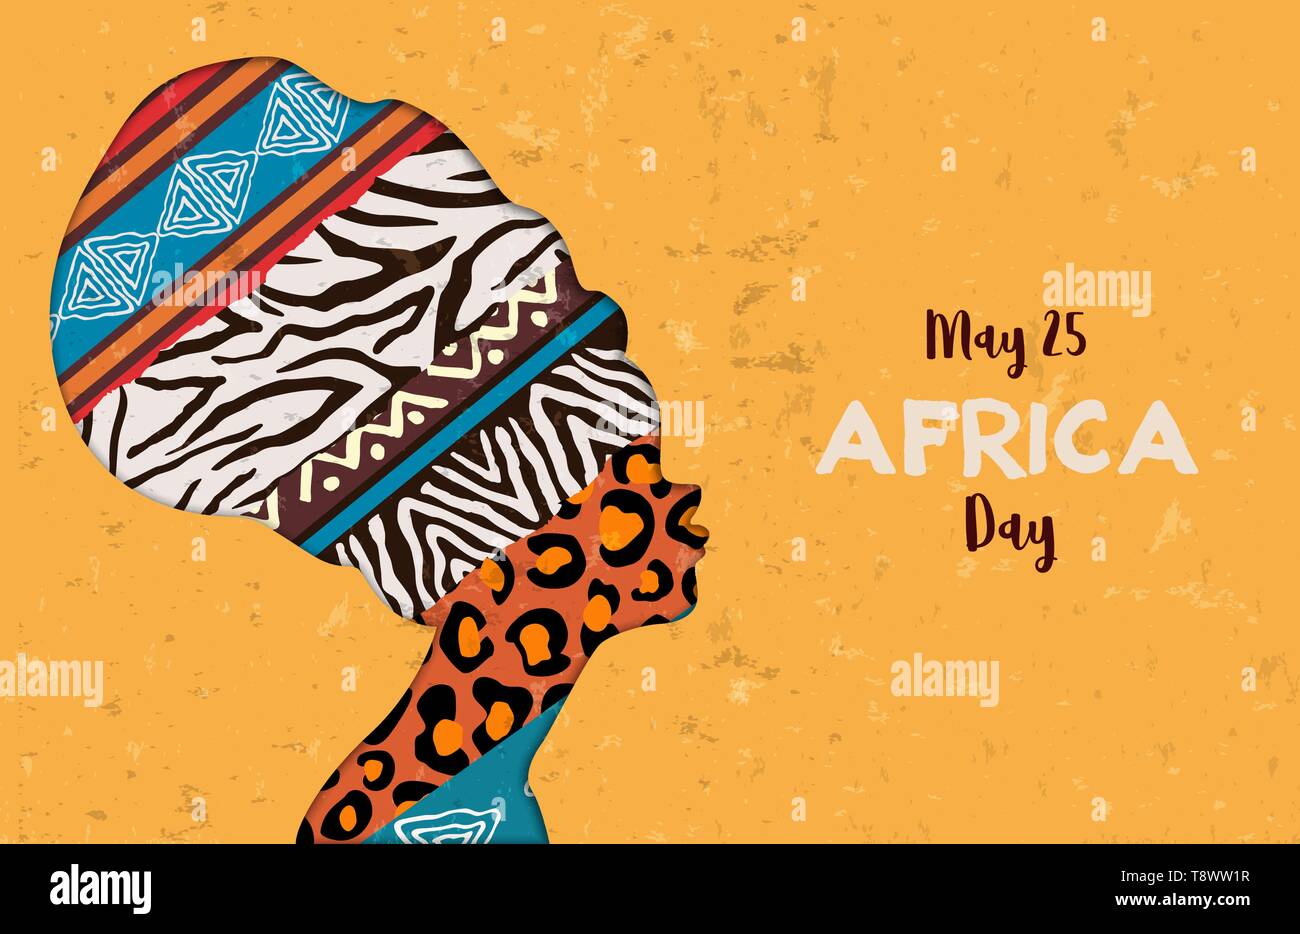 Afrika Tag Grußkarte Abbildung für 25 feiern können. Afrikanische Frau Kopf mit ethnischen Tierdruck Texturen. Stock Vektor